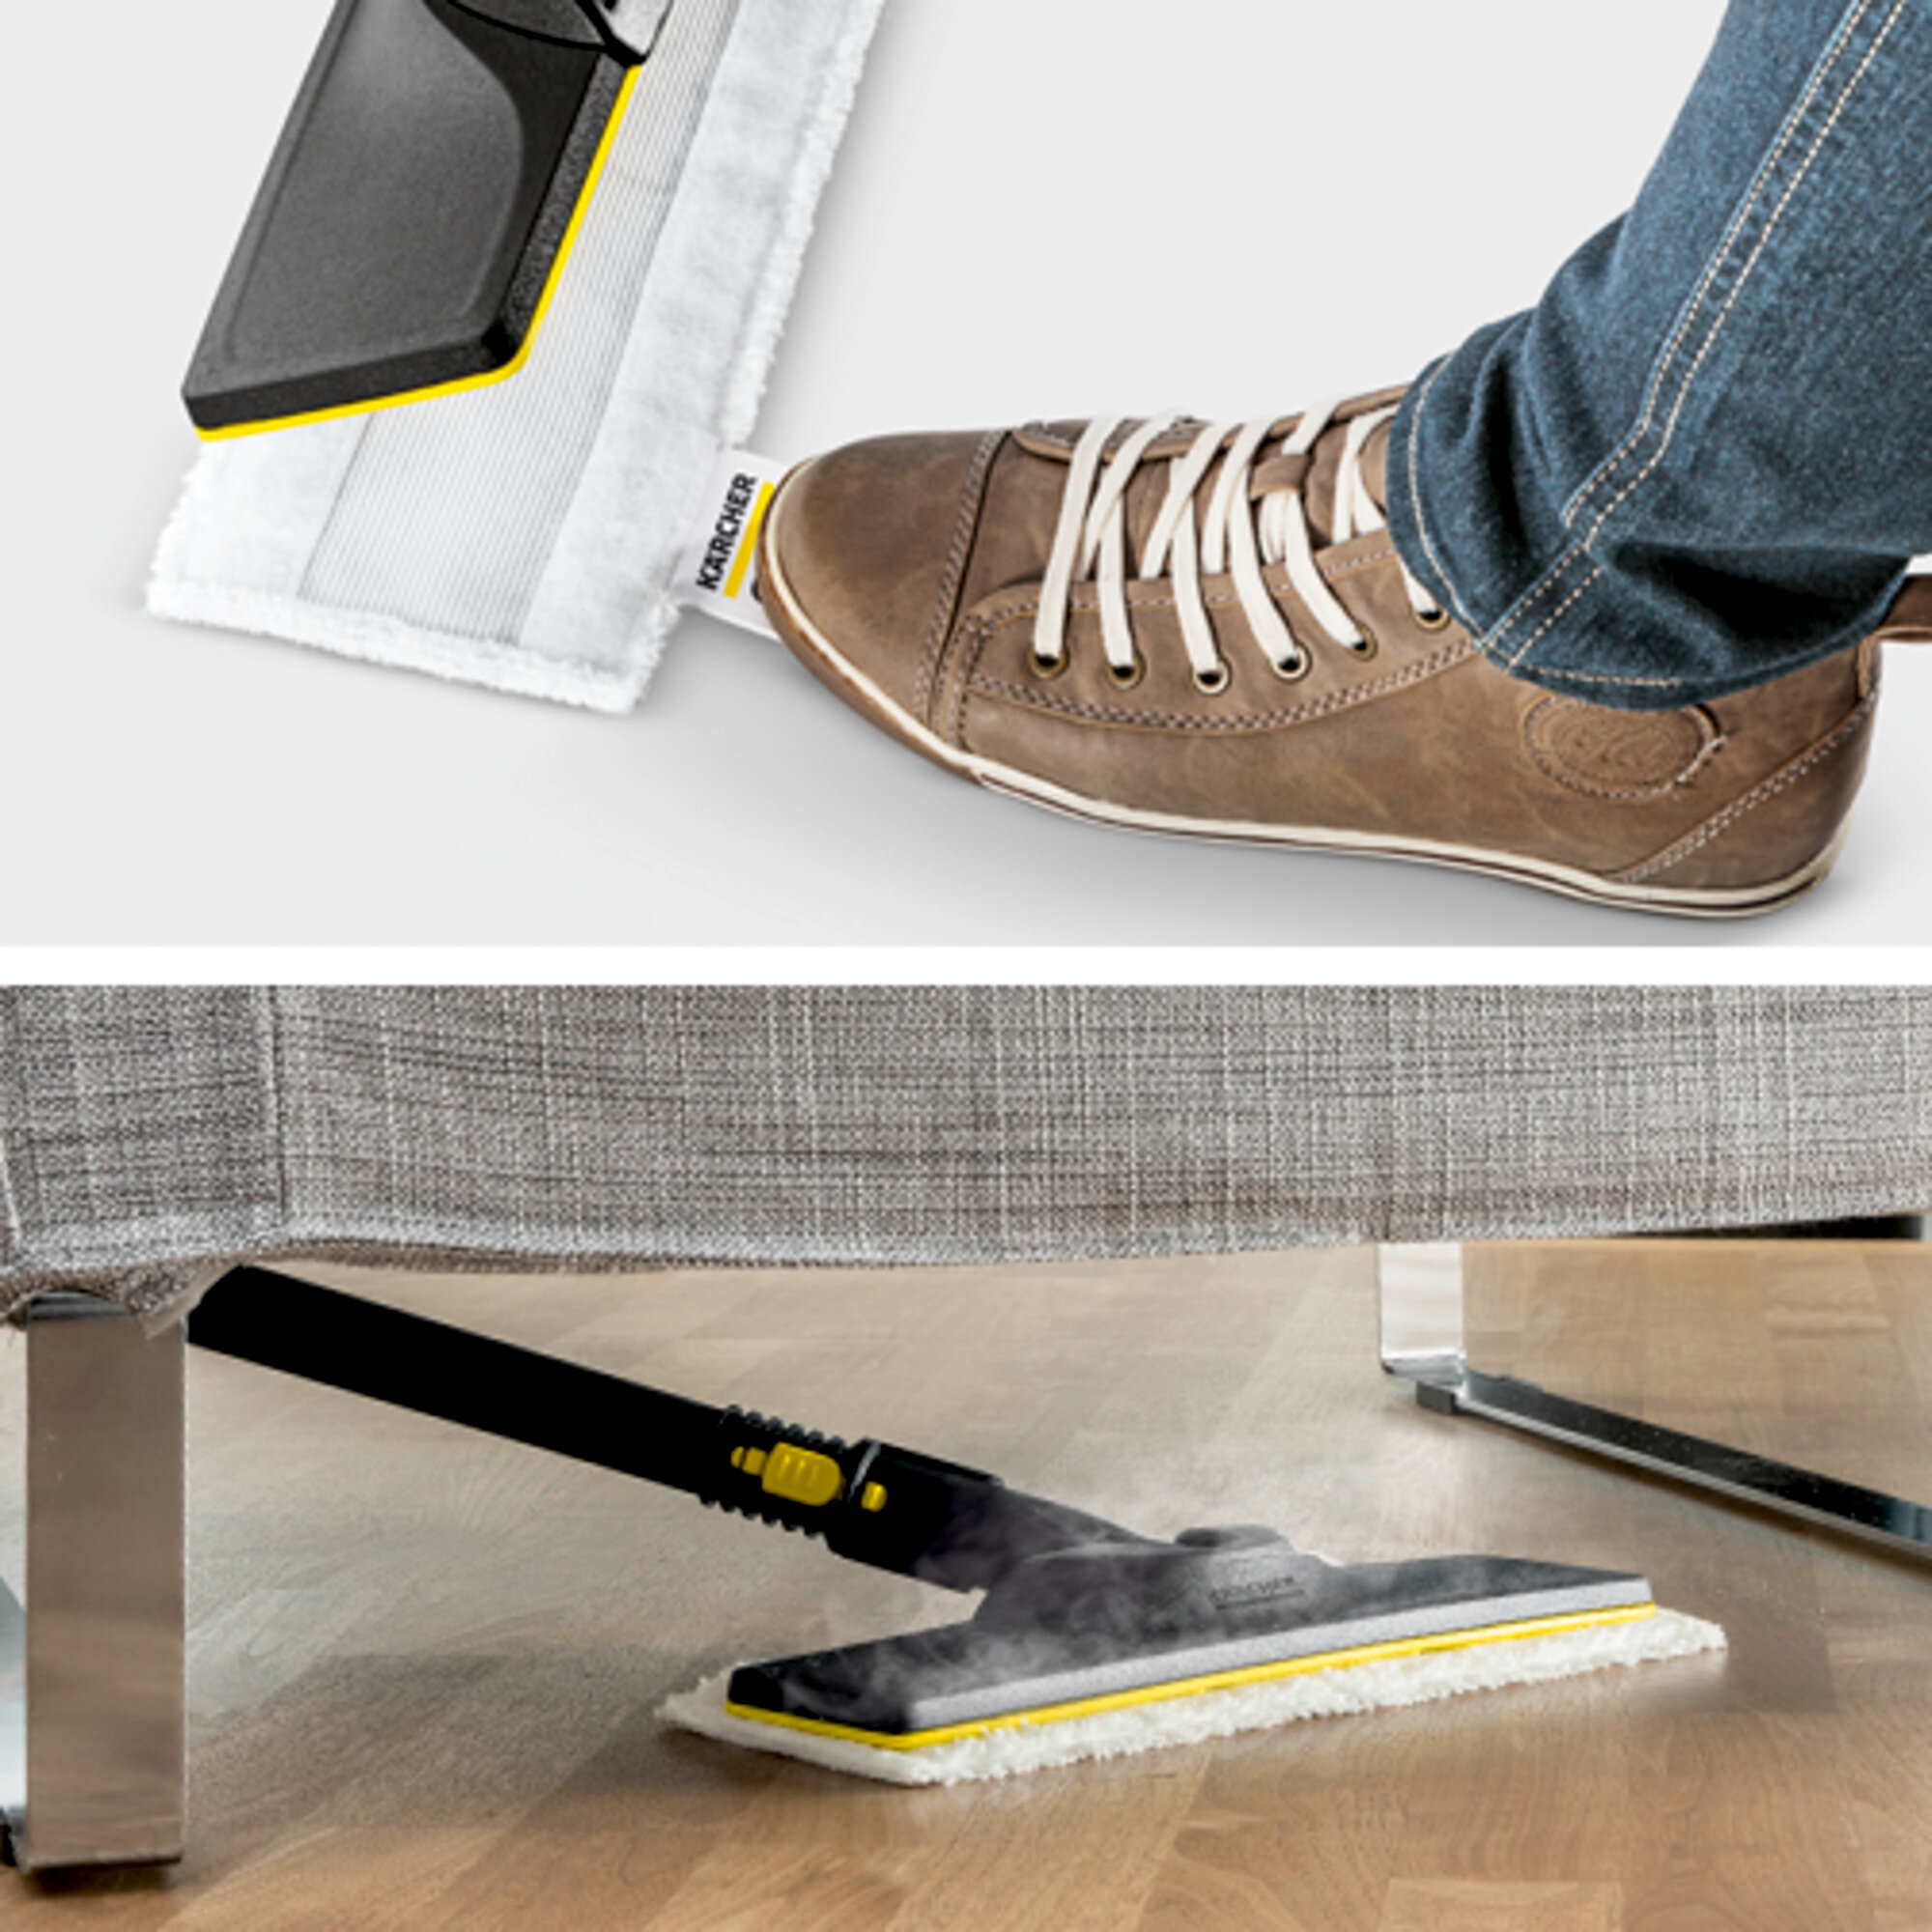 Parný čistič Parný čistič SC 4 EasyFix: Súprava na čistenie podlahy EasyFix s flexibilným kĺbom na podlahovej hubici a pohodlným suchým zipsom na upevnenie utierky na podlahu